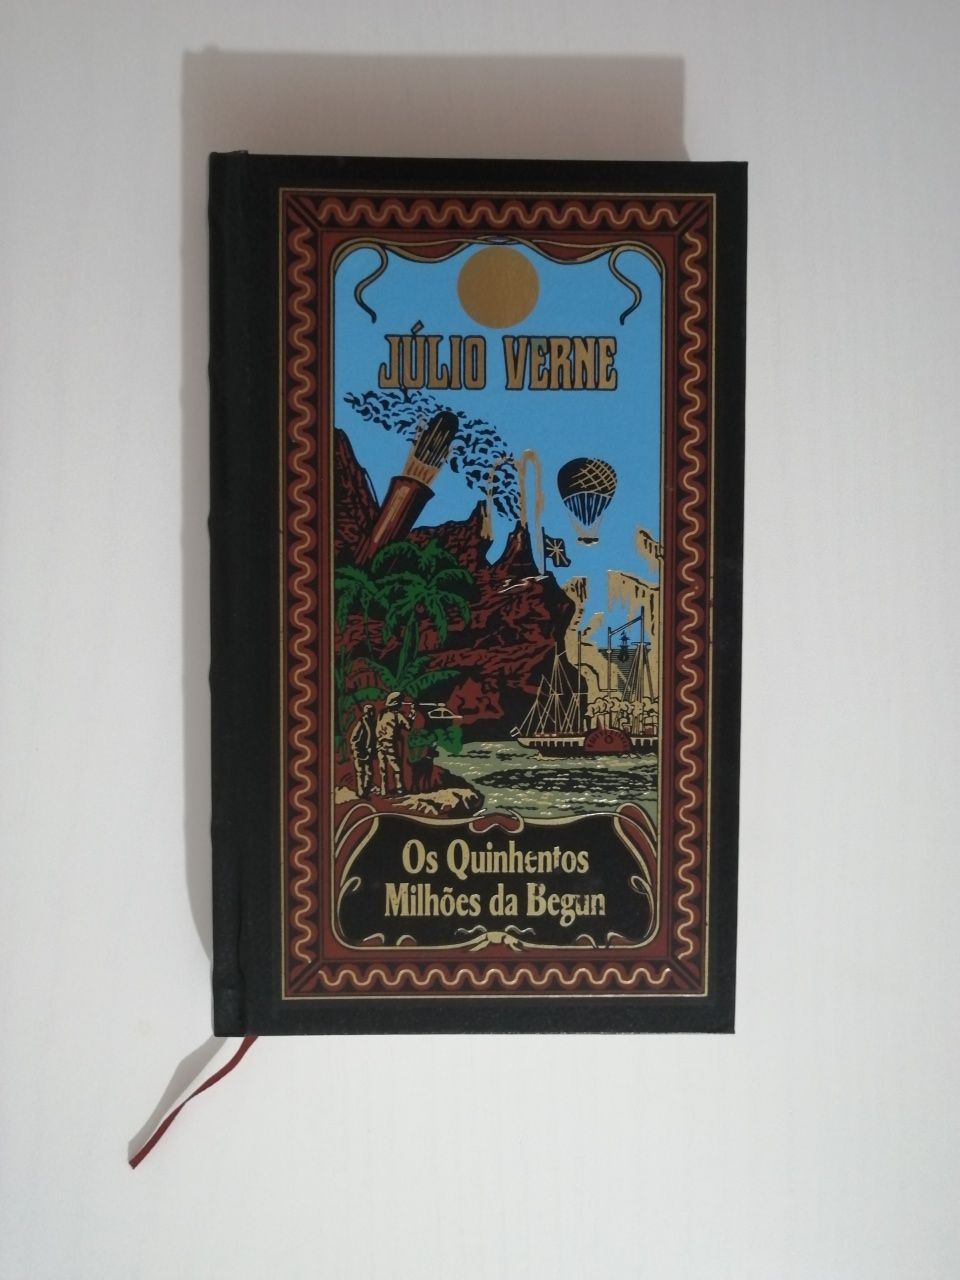 Livro: "Os Quinhentos Milhões de Begun" de Júlio Verne